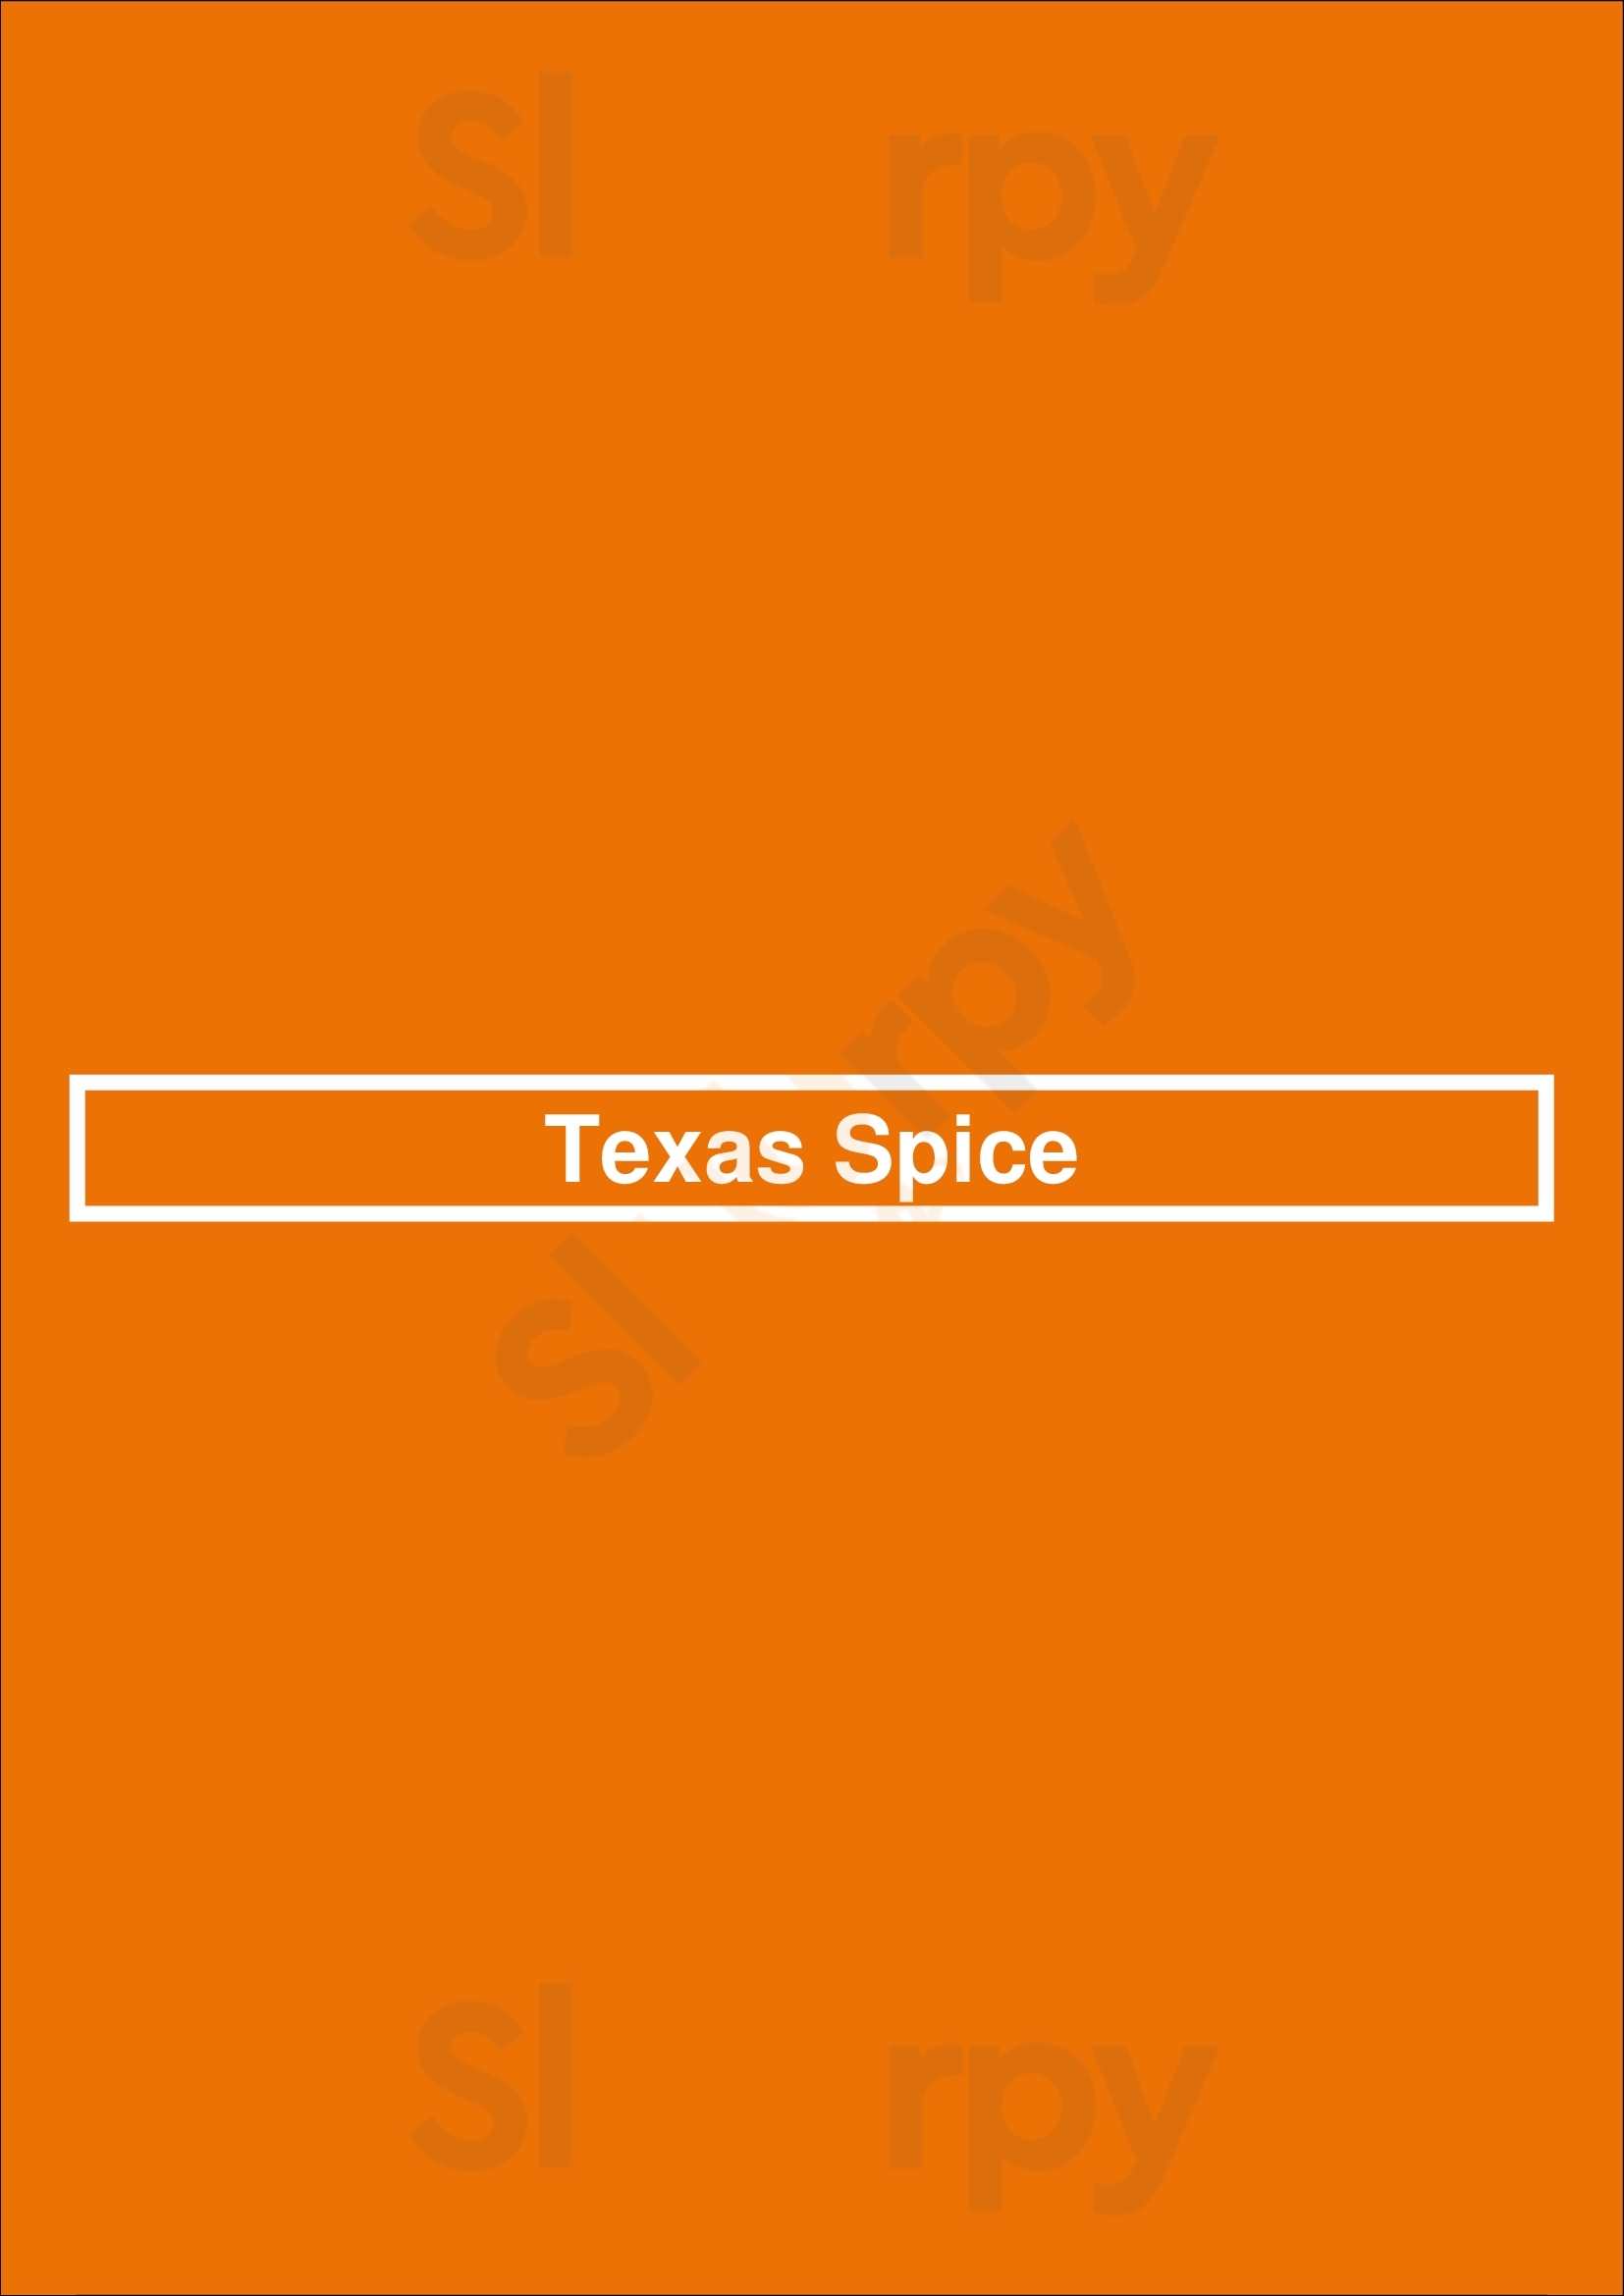 Texas Spice Dallas Menu - 1